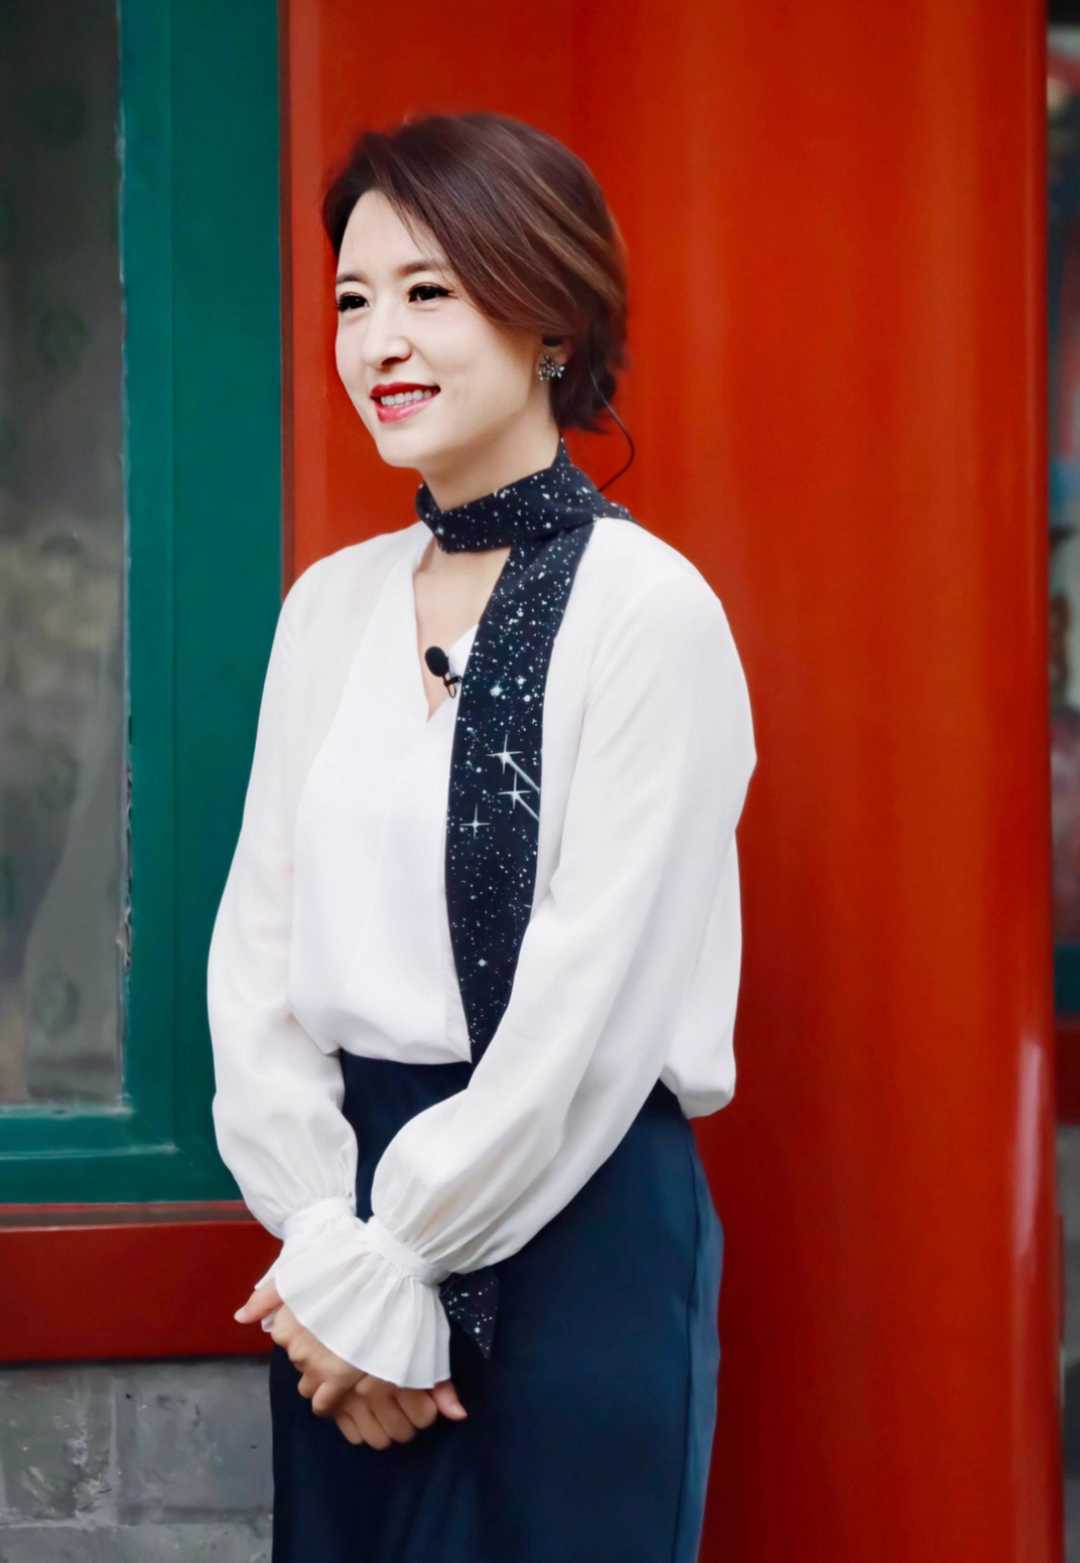 张蕾是优雅女性穿搭楷模，白衬衫配丝巾高级大气，教科书般气质